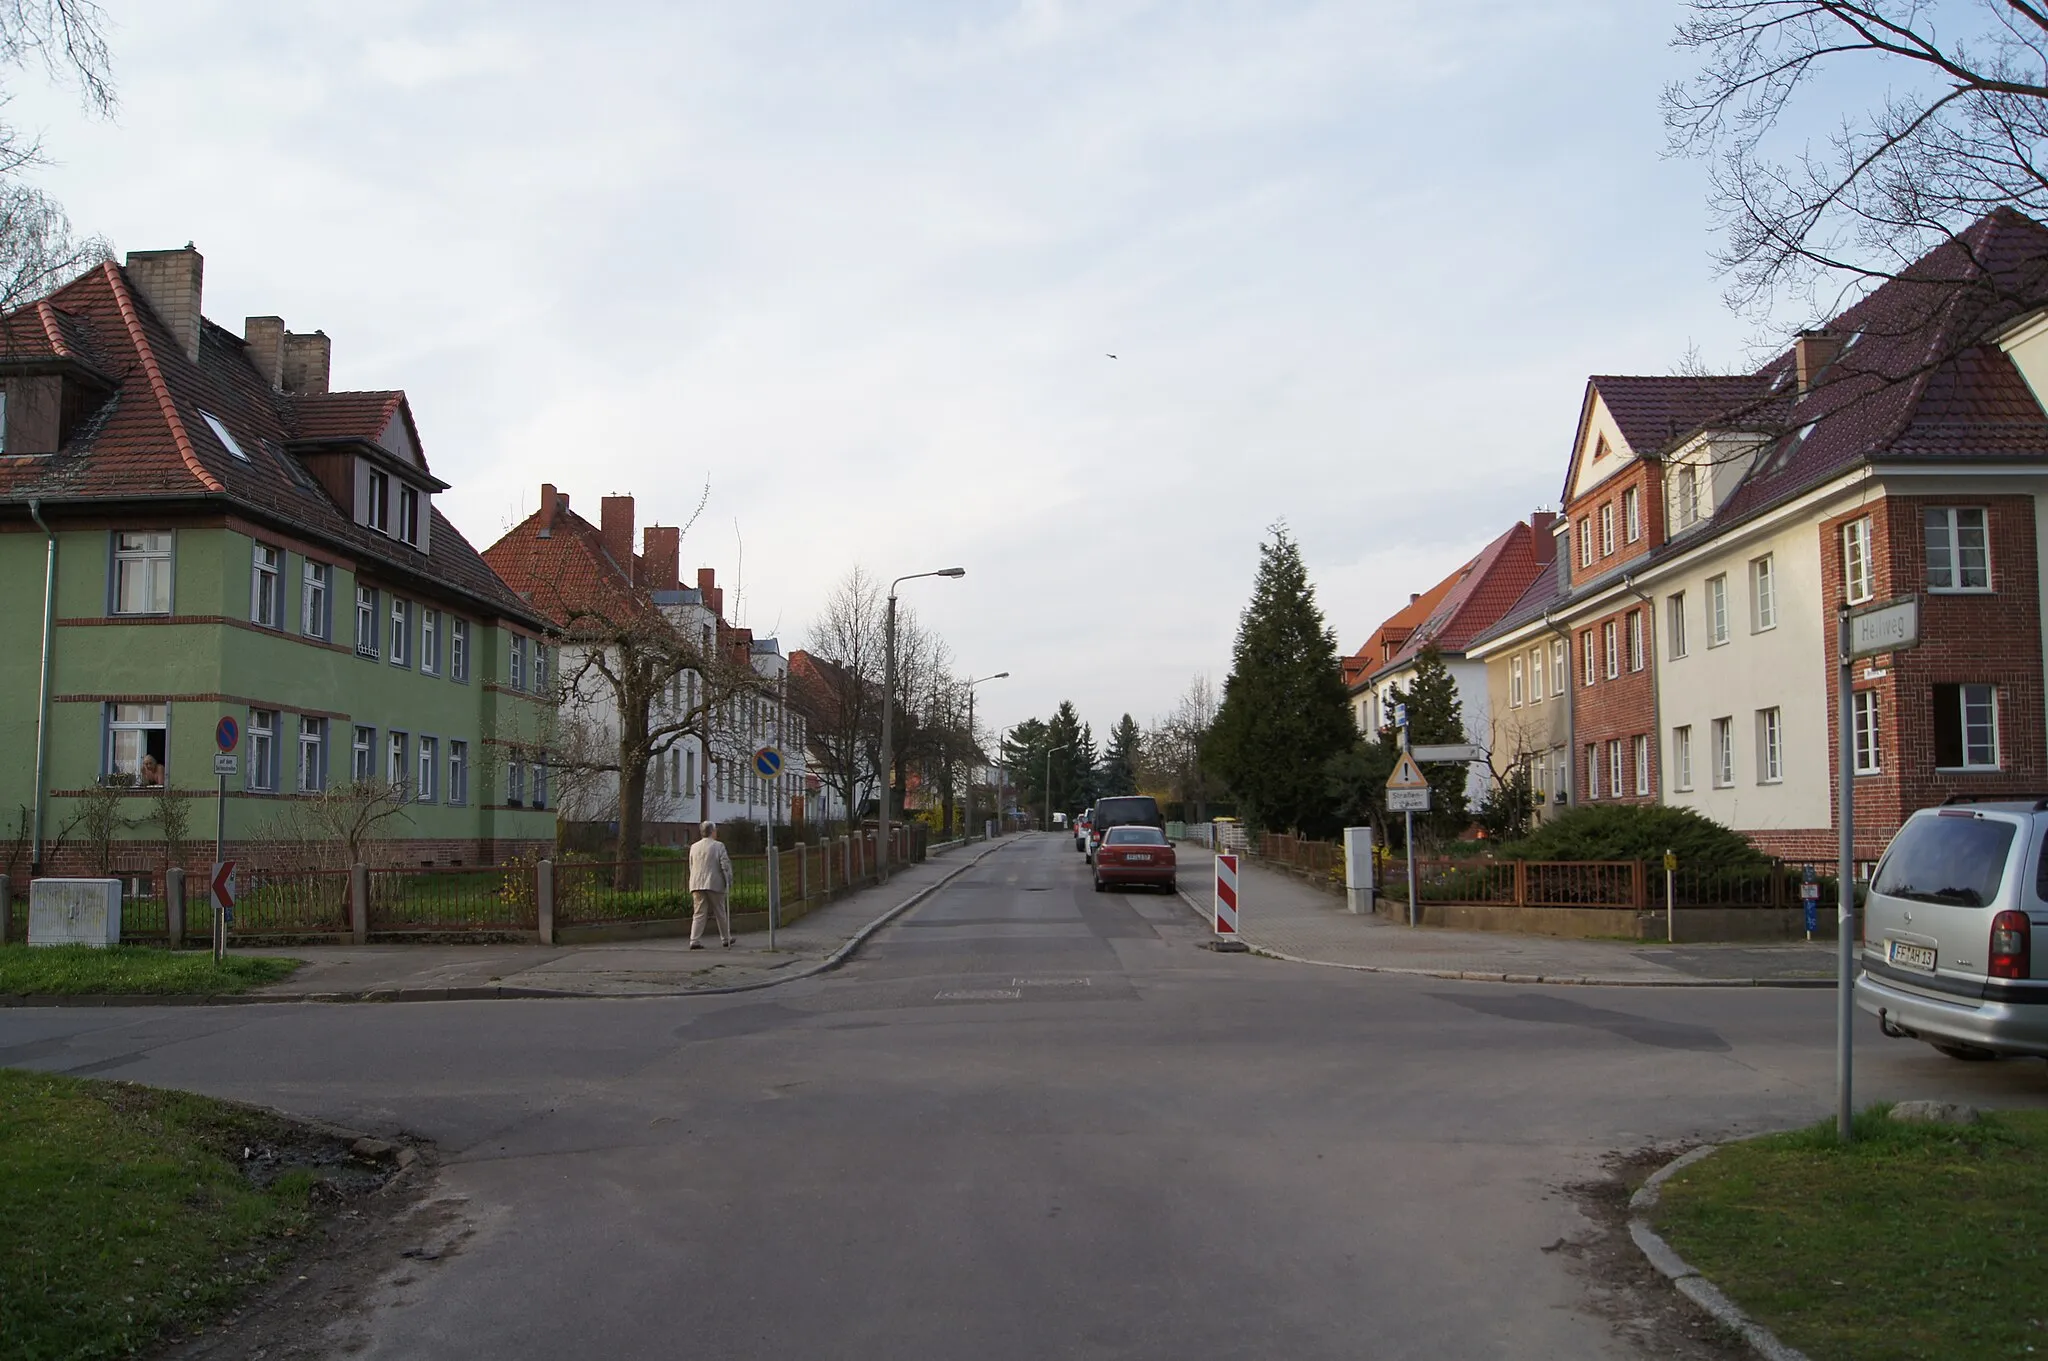 Photo showing: Paulinenhof Frankfurt (Oder), Brandenburg, Germany